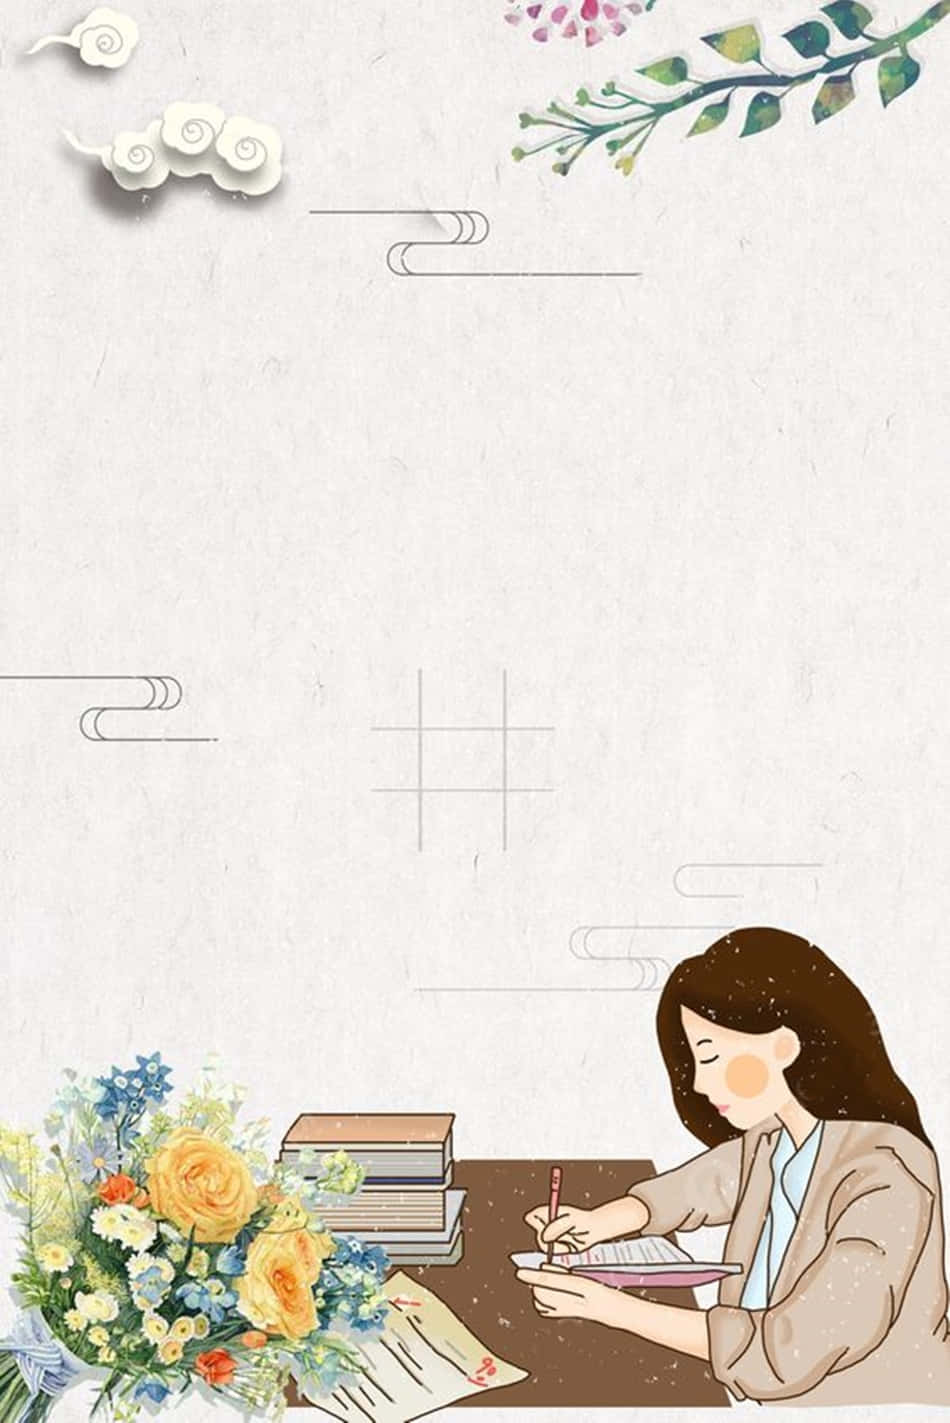 Enkvinna Sitter Vid En Skrivbord Med Blommor Och En Anteckningsbok. Wallpaper